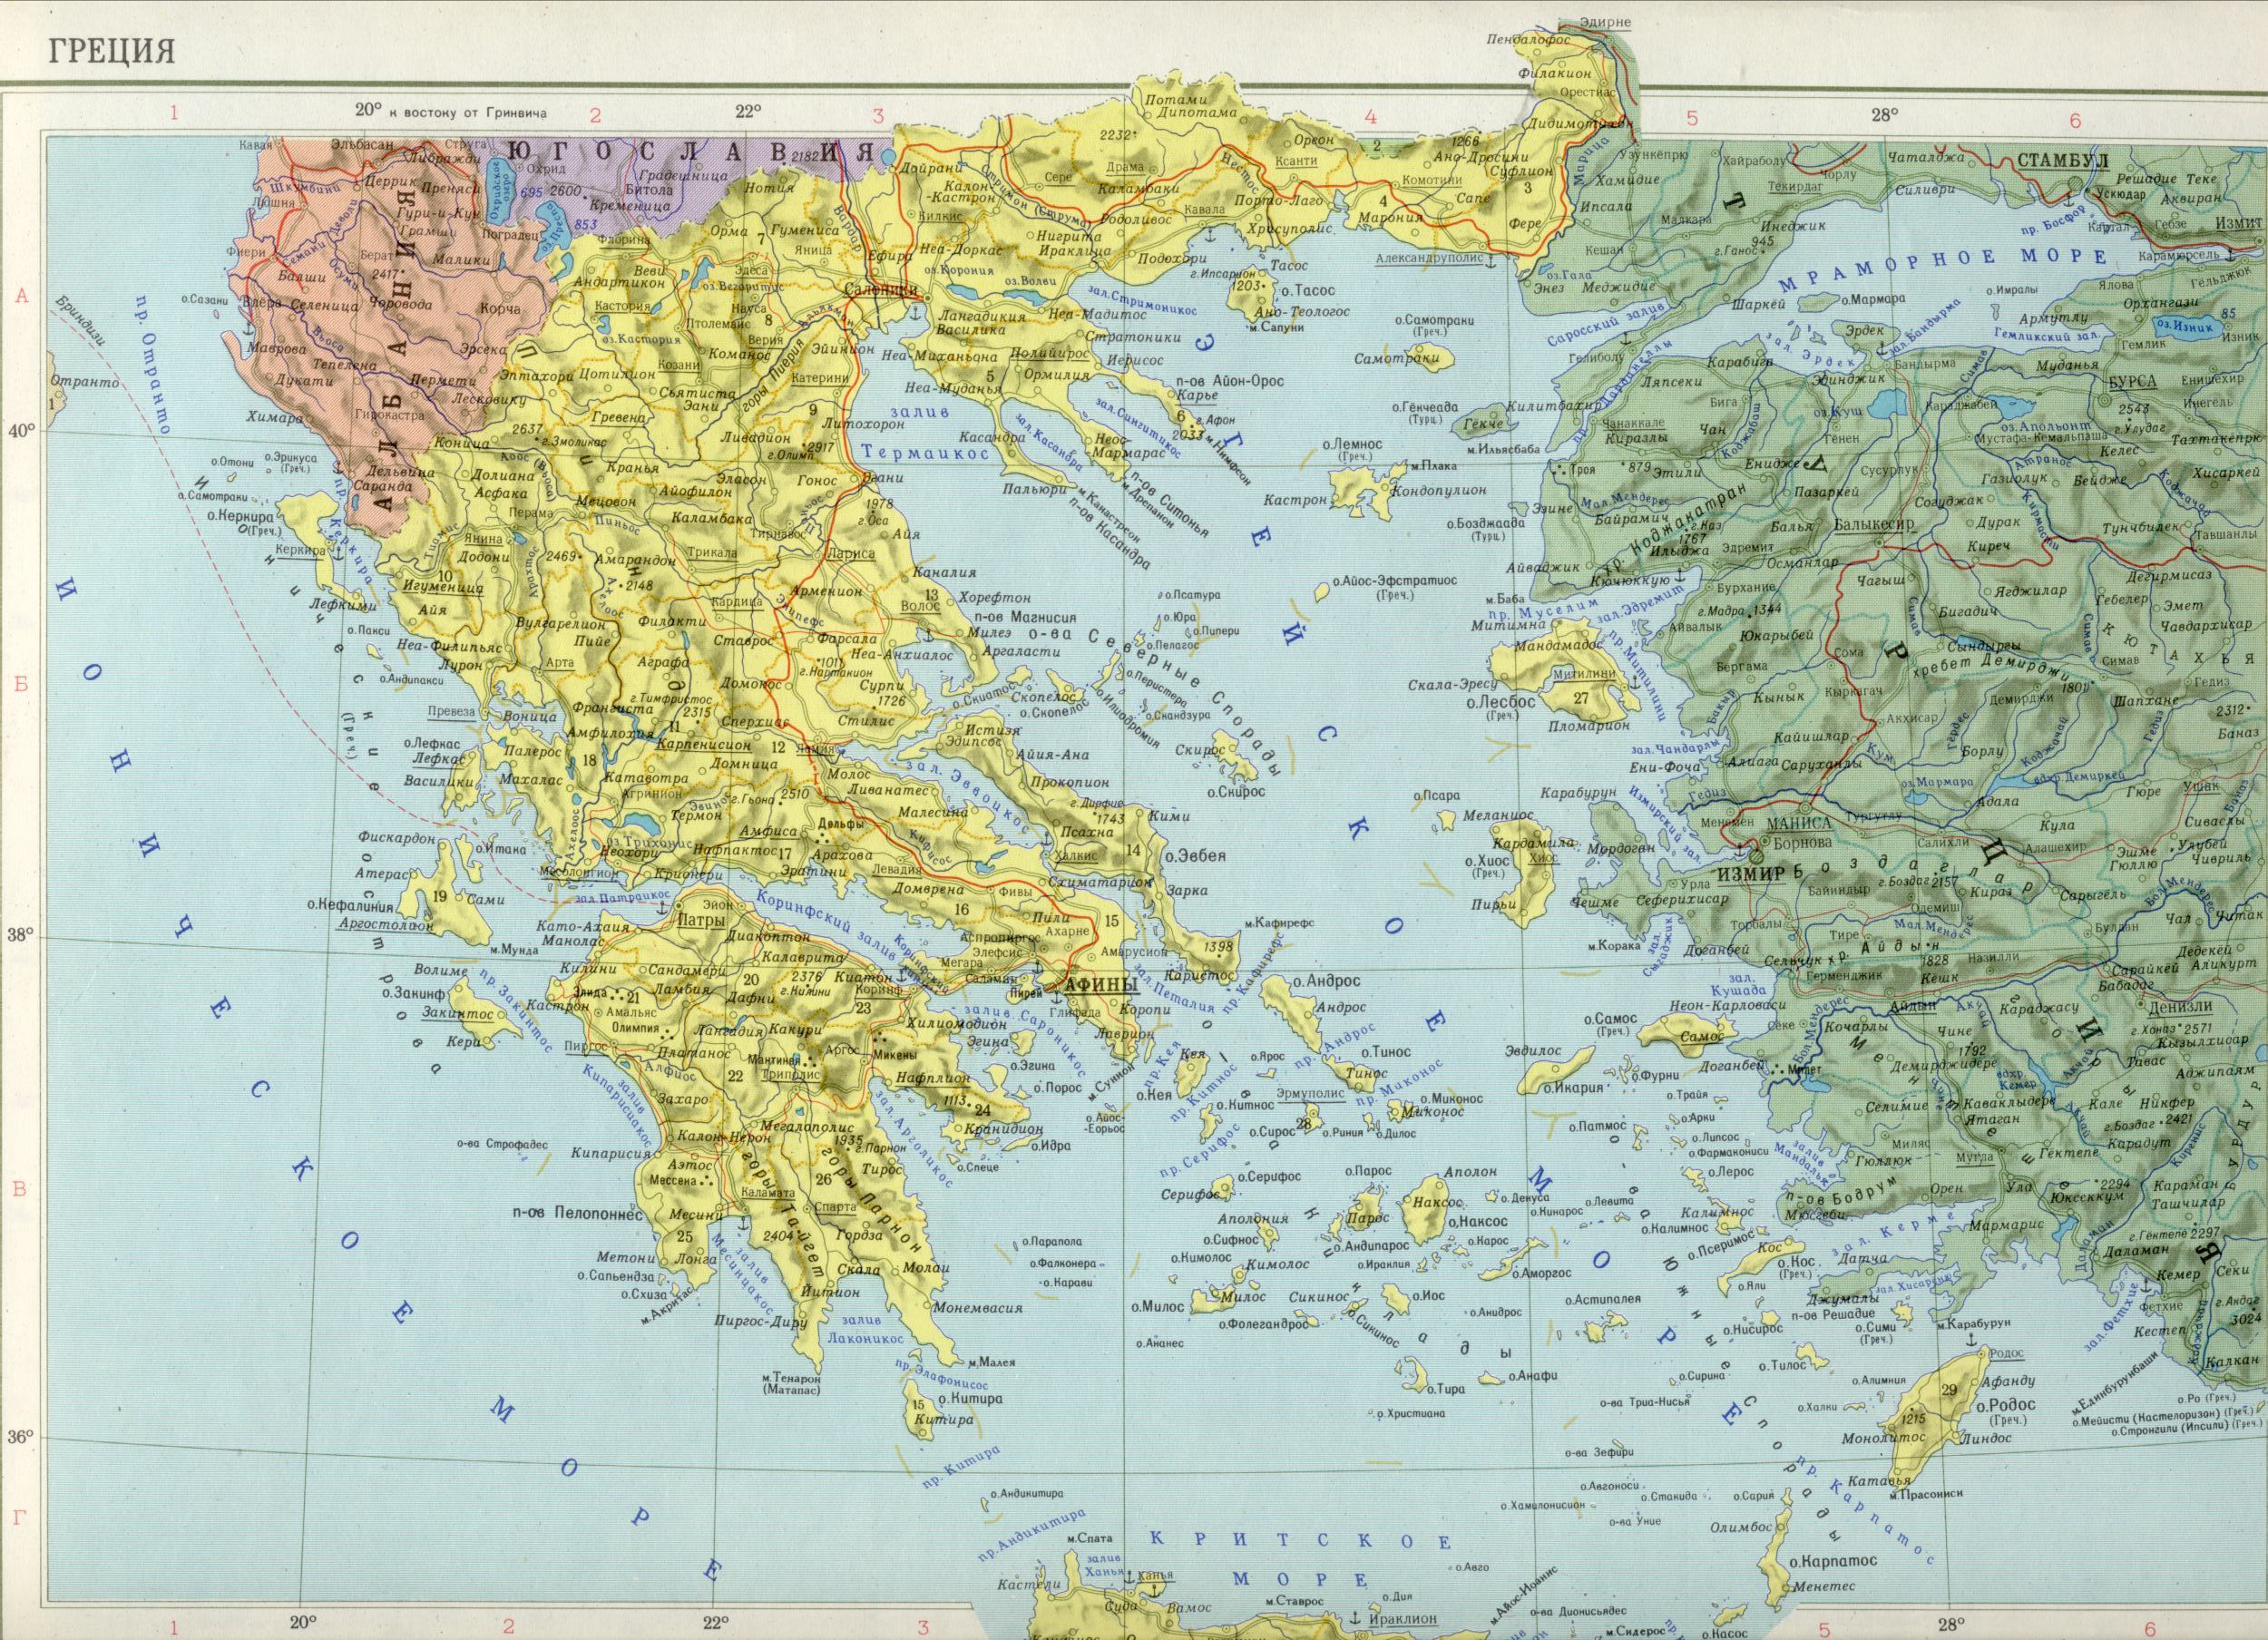 Griechenland Karte 1cm = 35km. Download politische Landkarte Europas